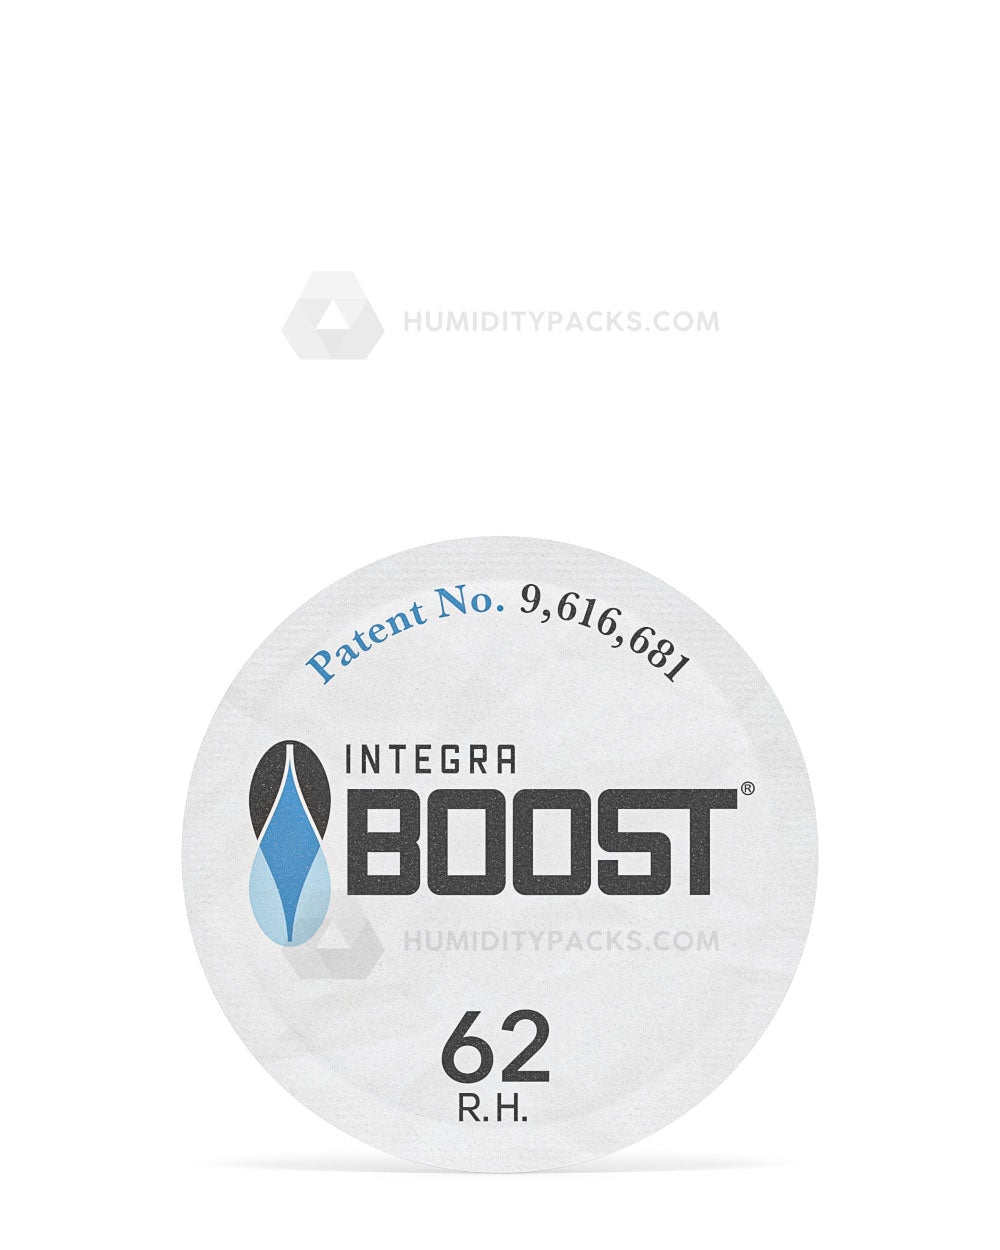 50mm Integra Boost 62% Humidity Packs 100/Box